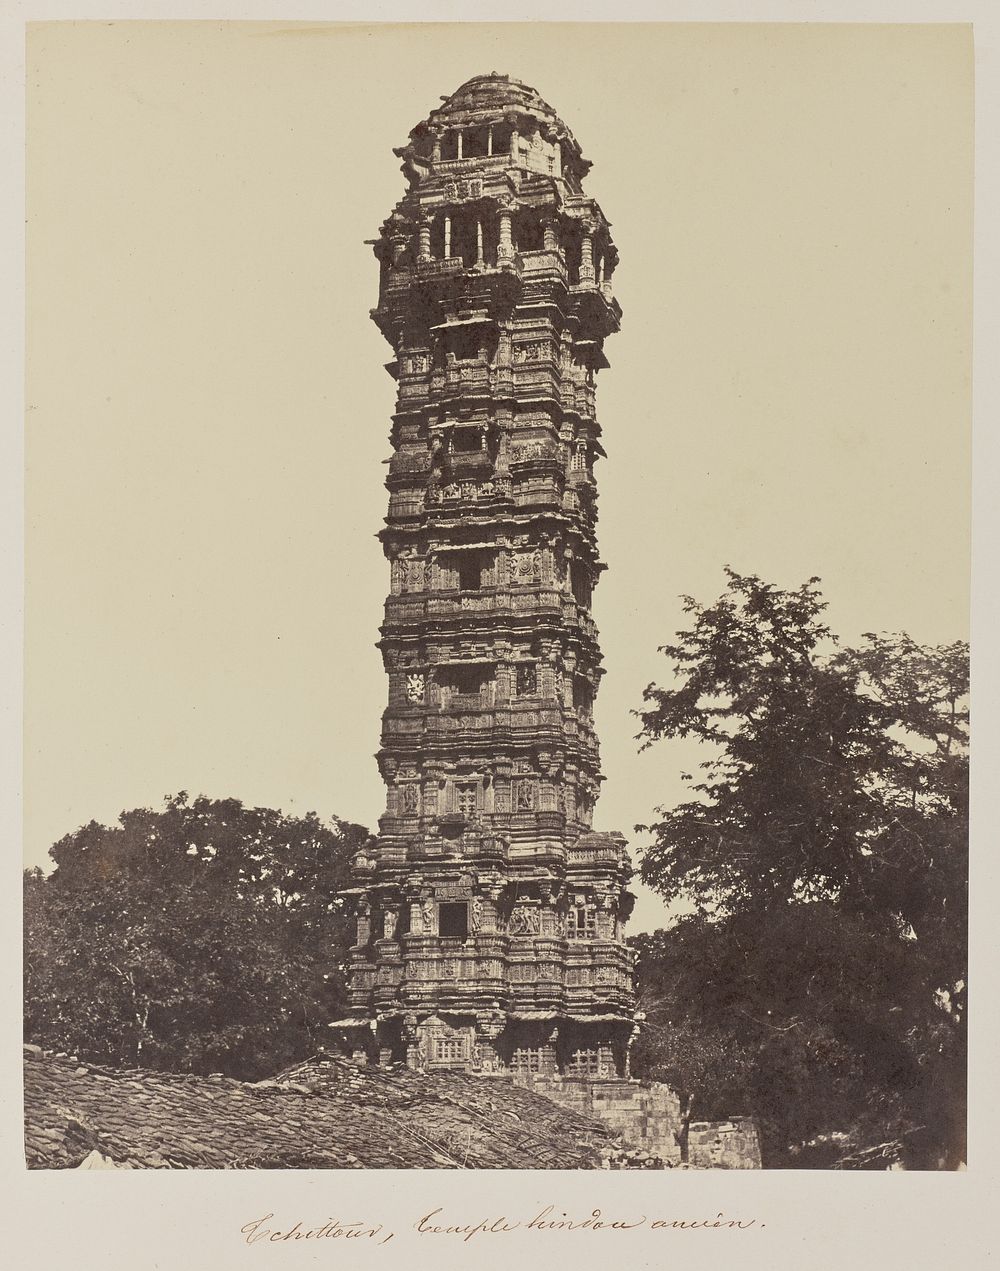 Tchittour, Temple hindou ancien by Baron Alexis de La Grange